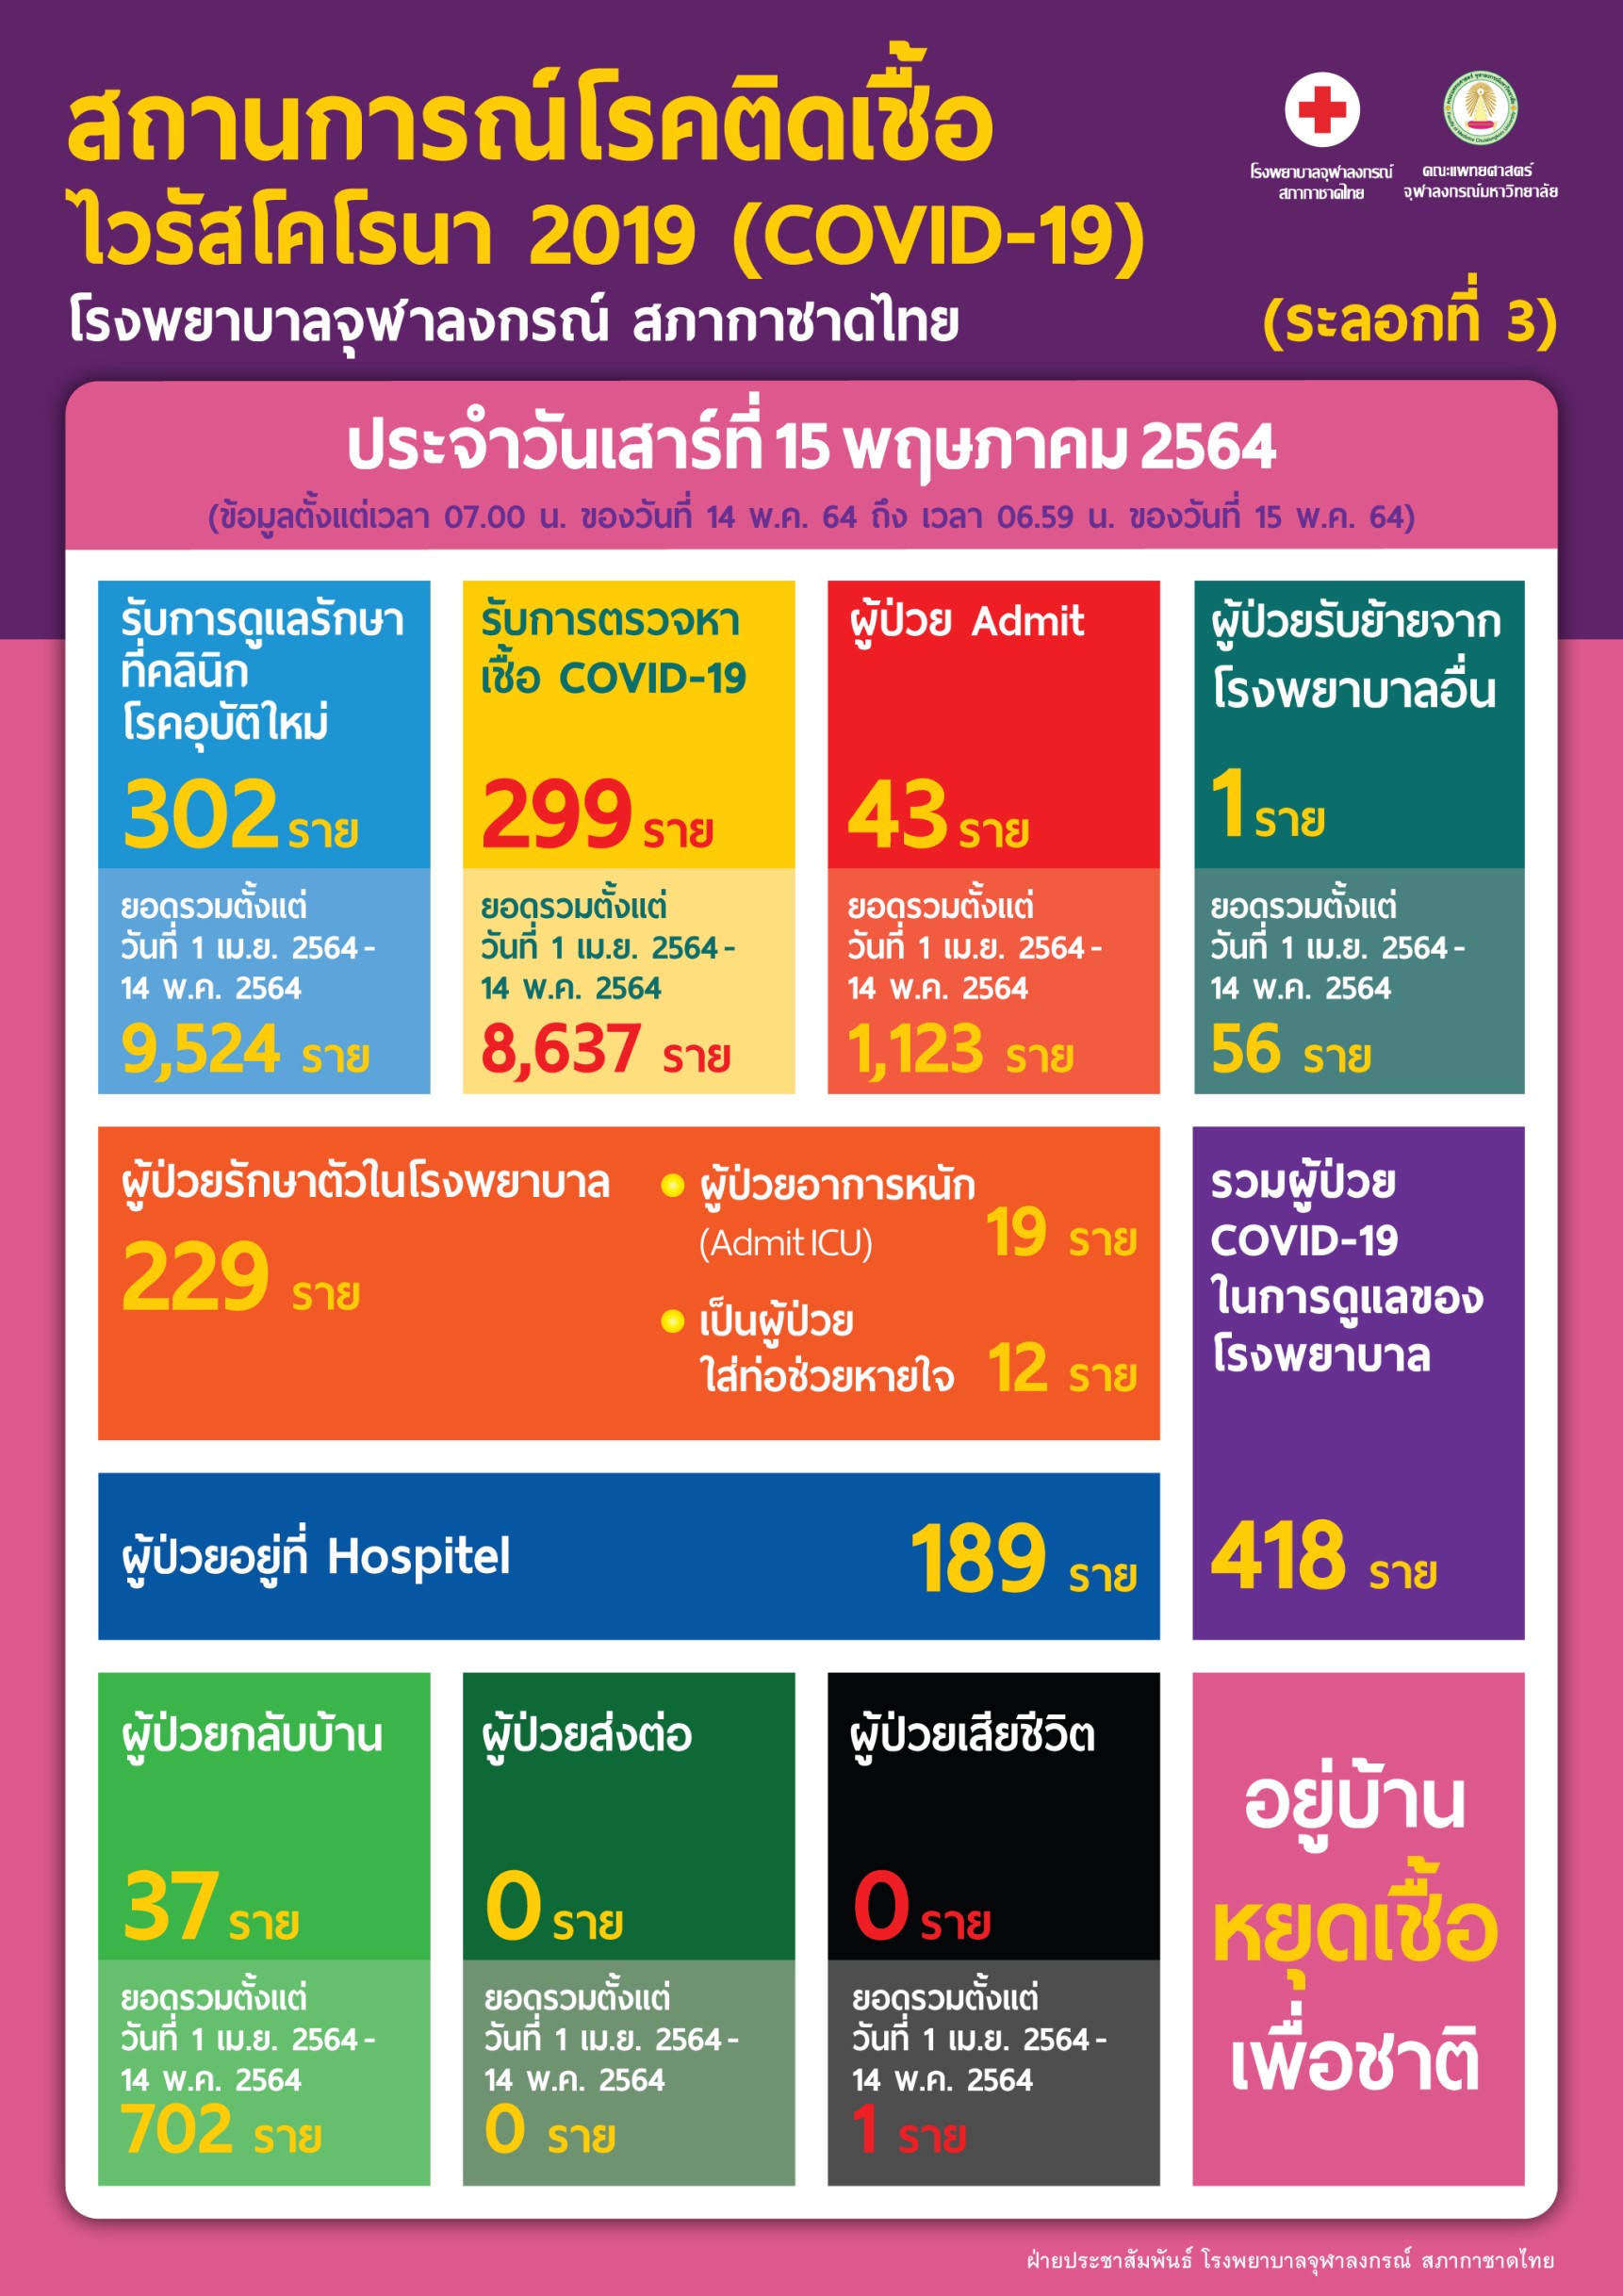 สถานการณ์โรคติดเชื้อ ไวรัสโคโรนา 2019 (COVID-19) โรงพยาบาลจุฬาลงกรณ์ สภากาชาดไทย (ระลอกที่ 3) ประจำวันเสาร์ที่ 15 พฤษภาคม 2564